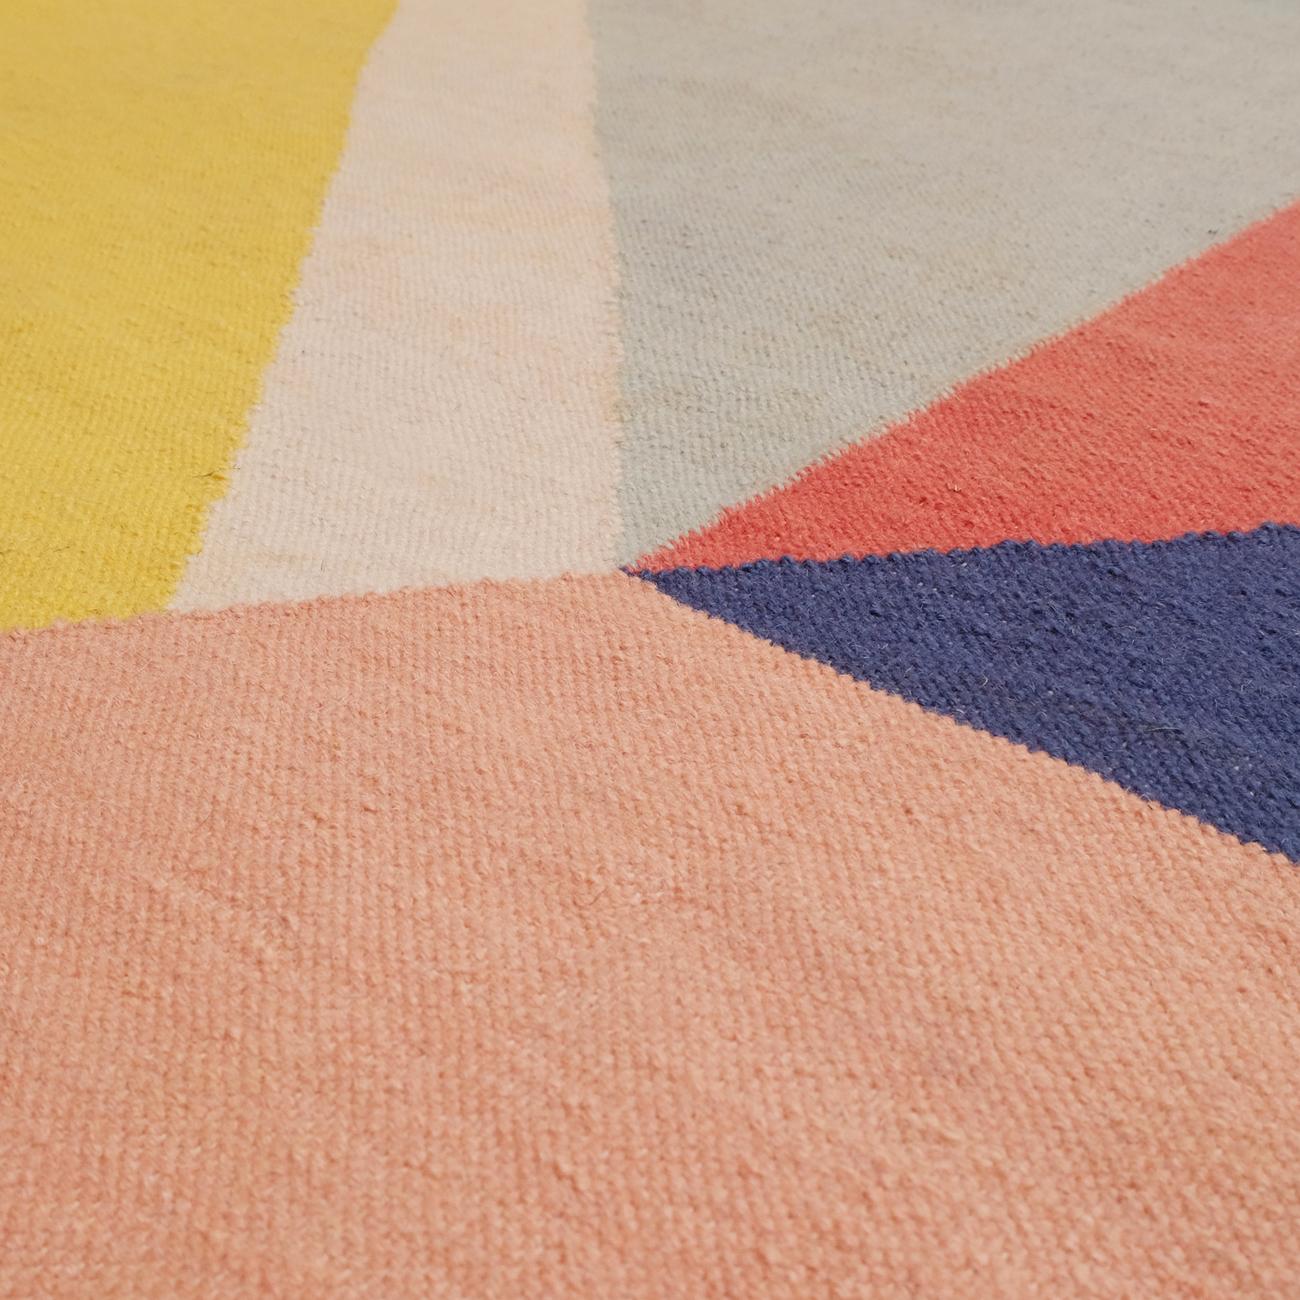 Morning Dream - Designteppich Ouwen Mori Kilim Teppich Wolle Baumwolle Handgewebt Warm
Morgentraum

Auf diesem Teppich wird die Geometrie zu einer unregelmäßigen Perspektive der architektonischen Formen neu zusammengesetzt. Die Farbe verleiht diesen